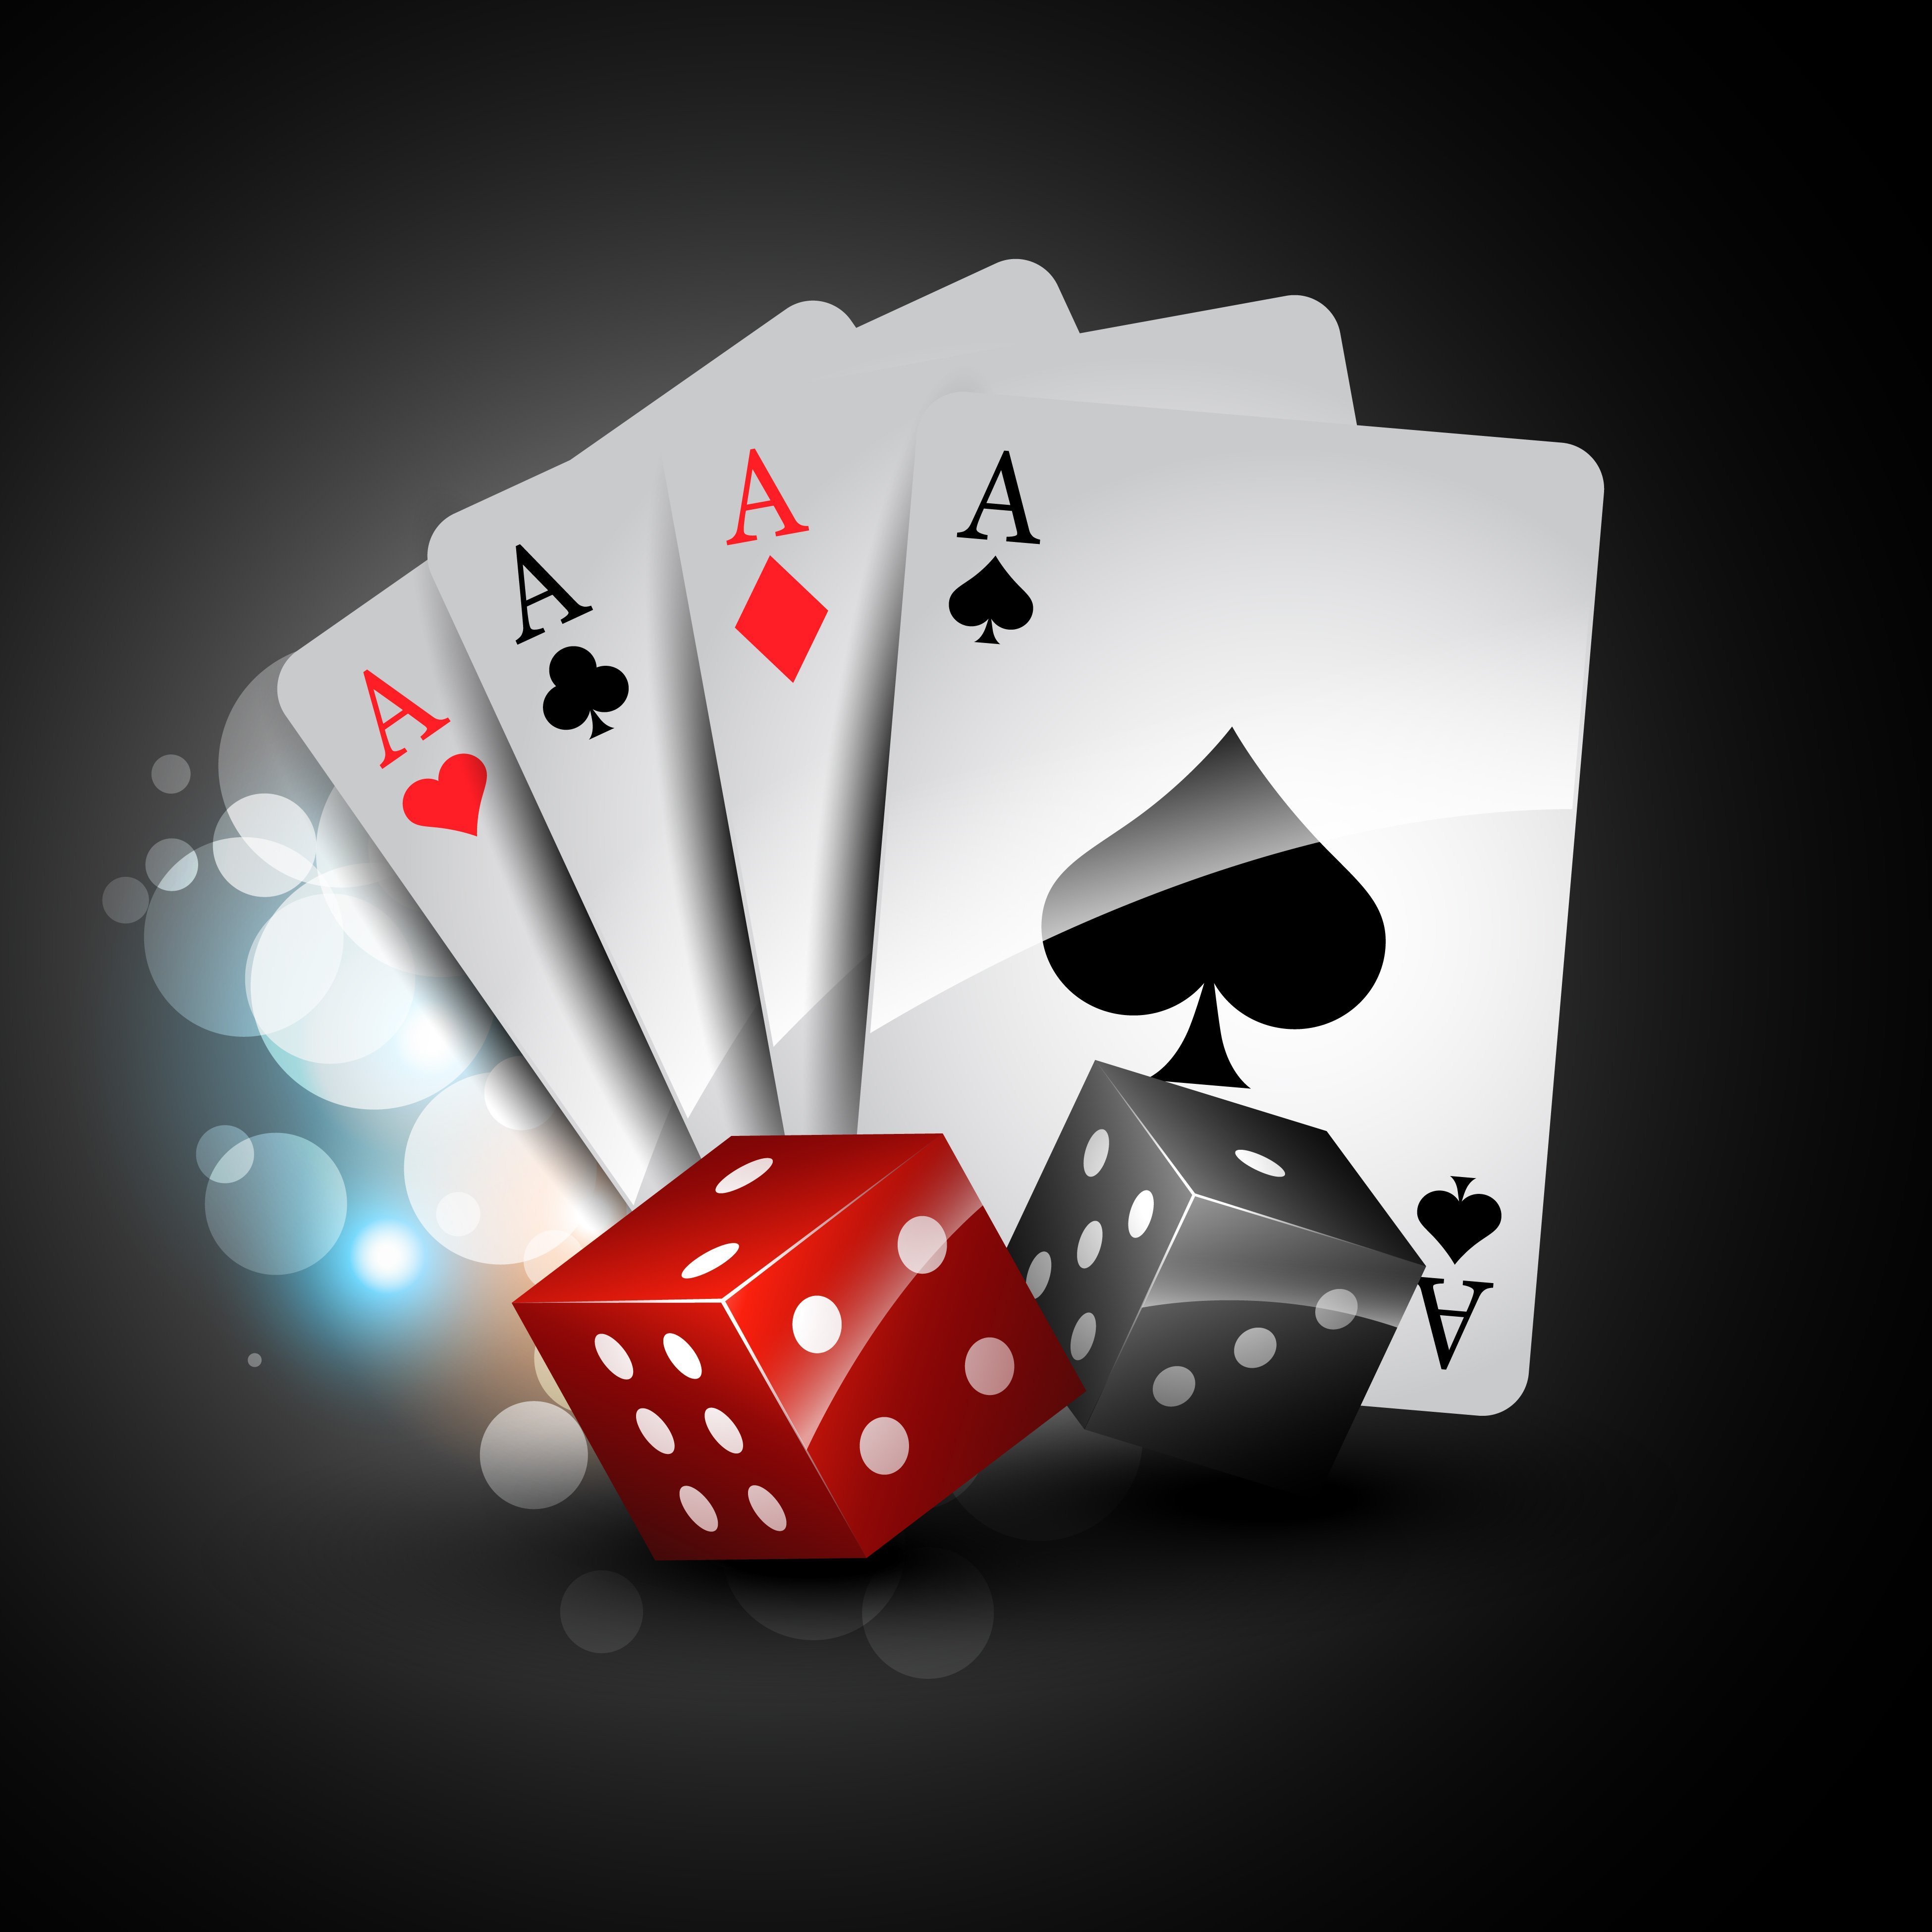 Cards image. Игральные карты туз Покер. Игральные карты Покер Кардс. Казино карты. Карты Покер картинки.